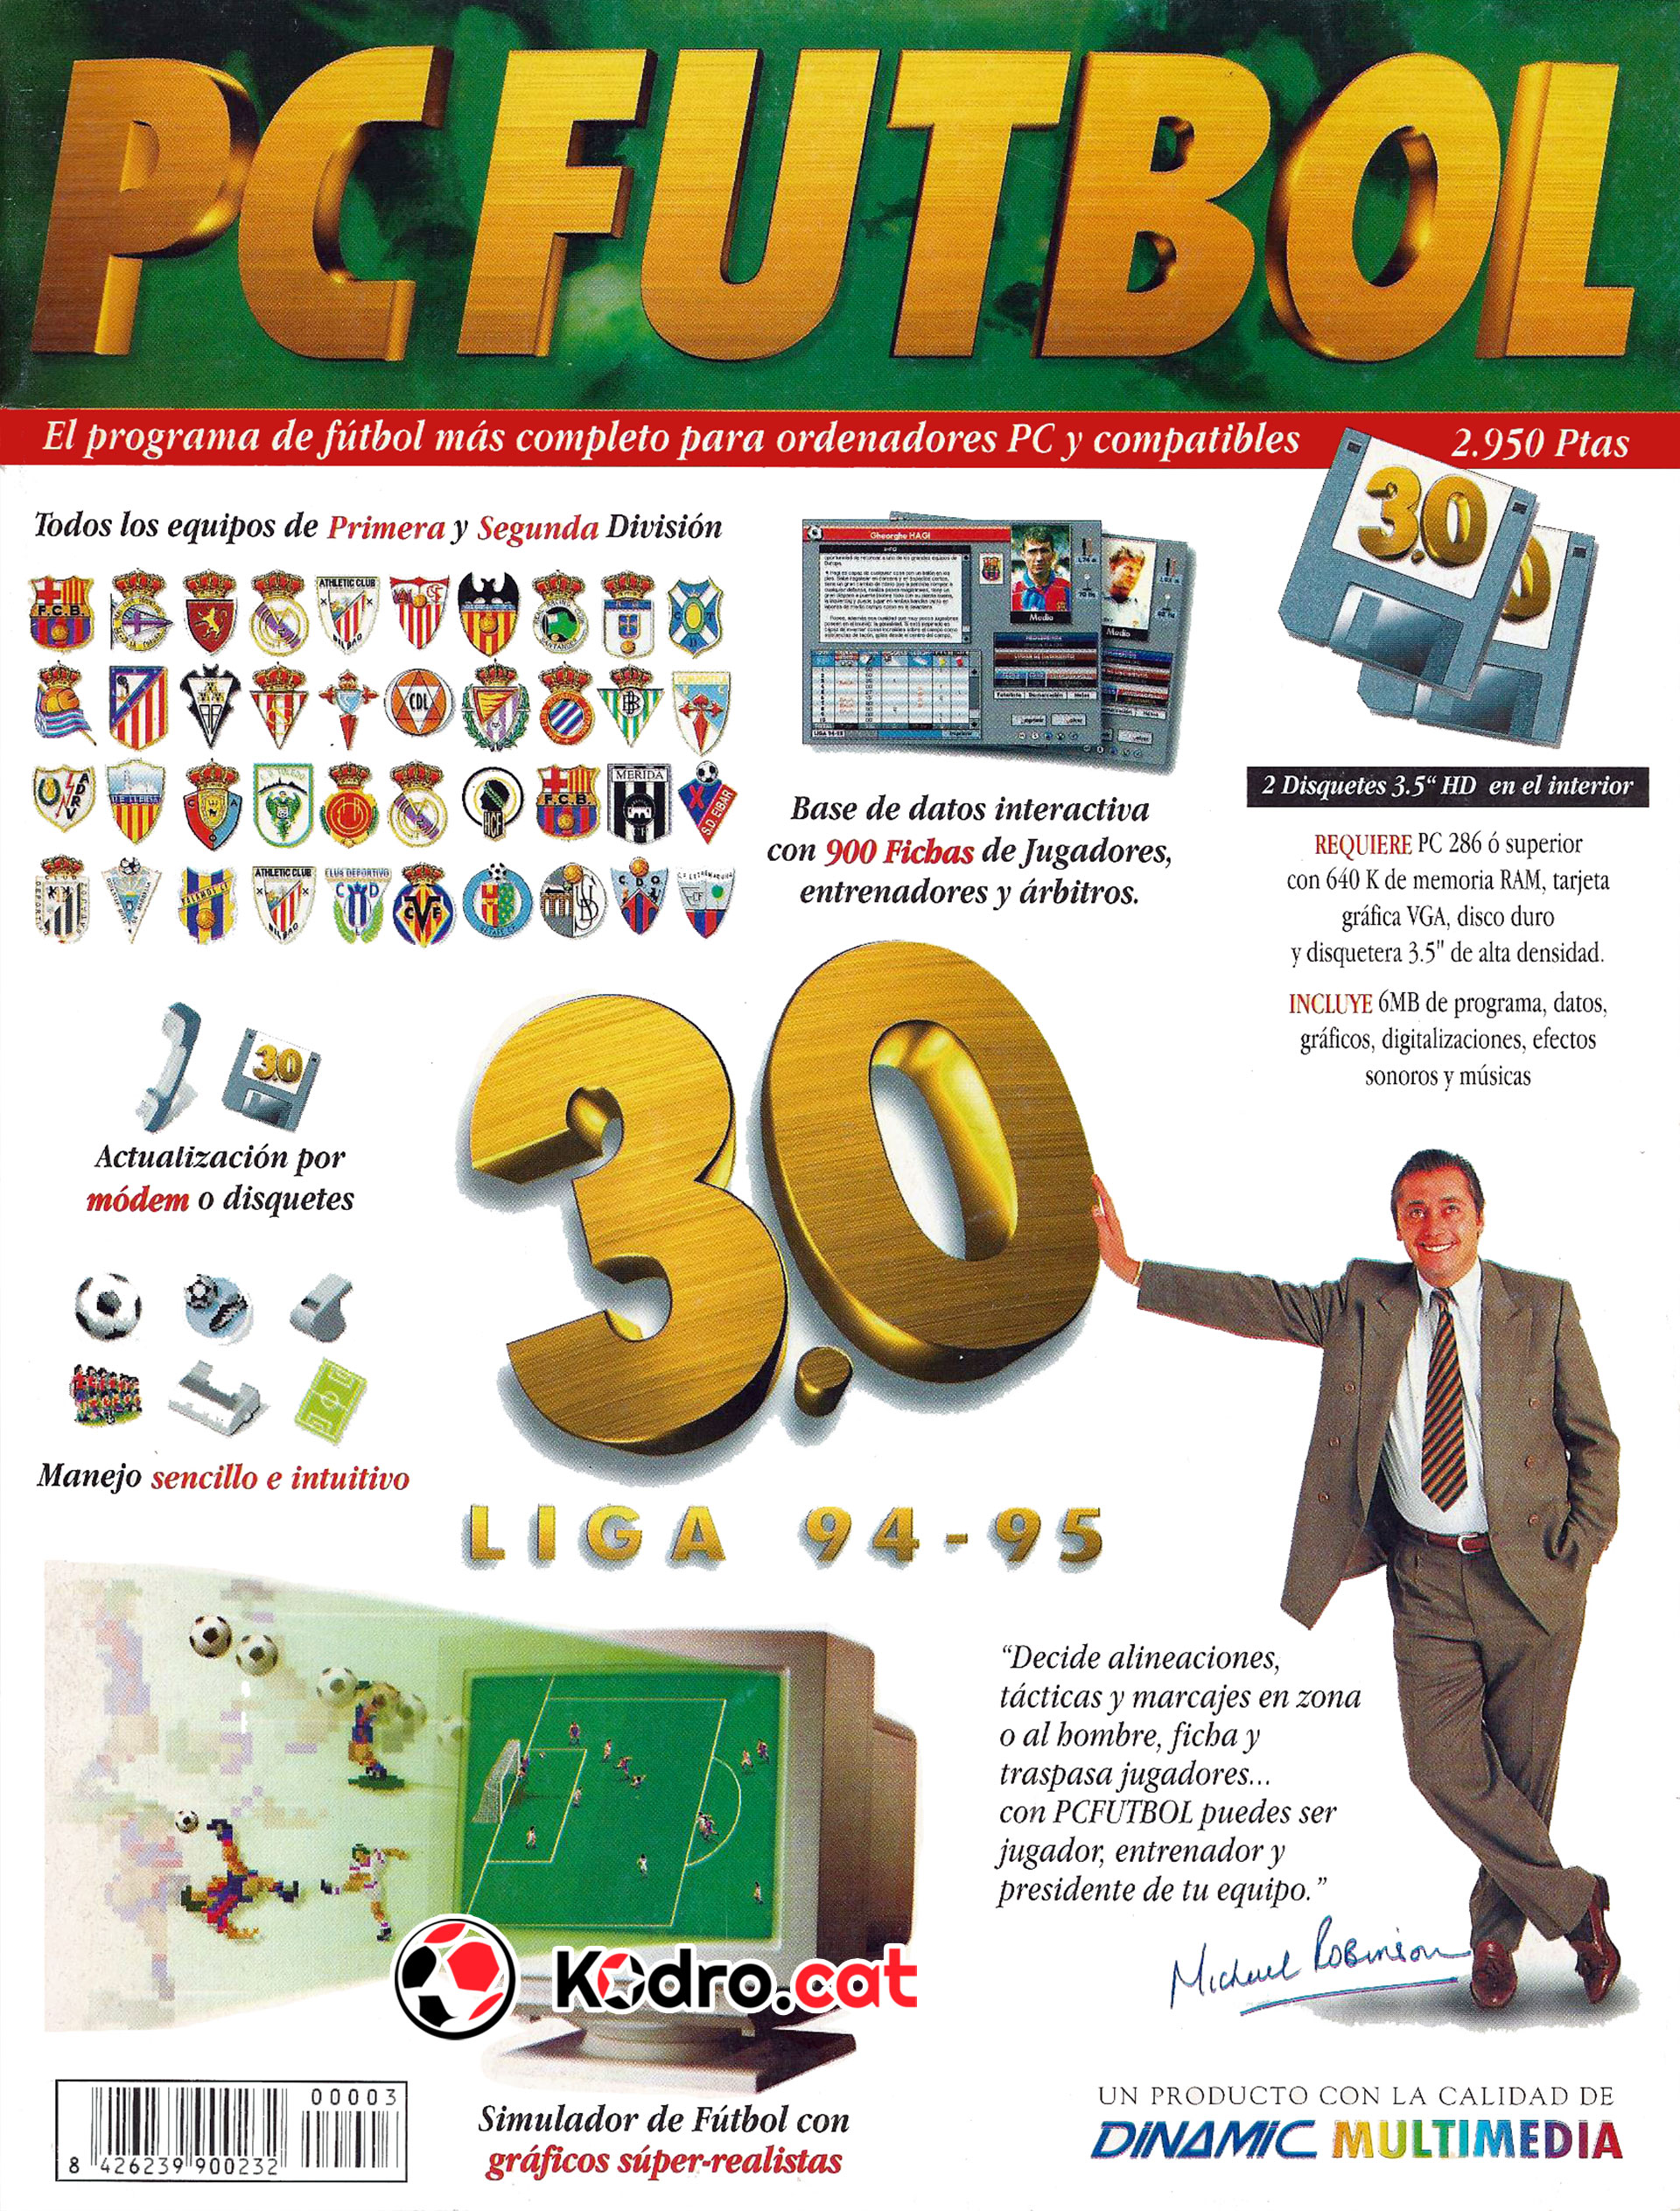 Portada de la revista del PC Fútbol 3.0